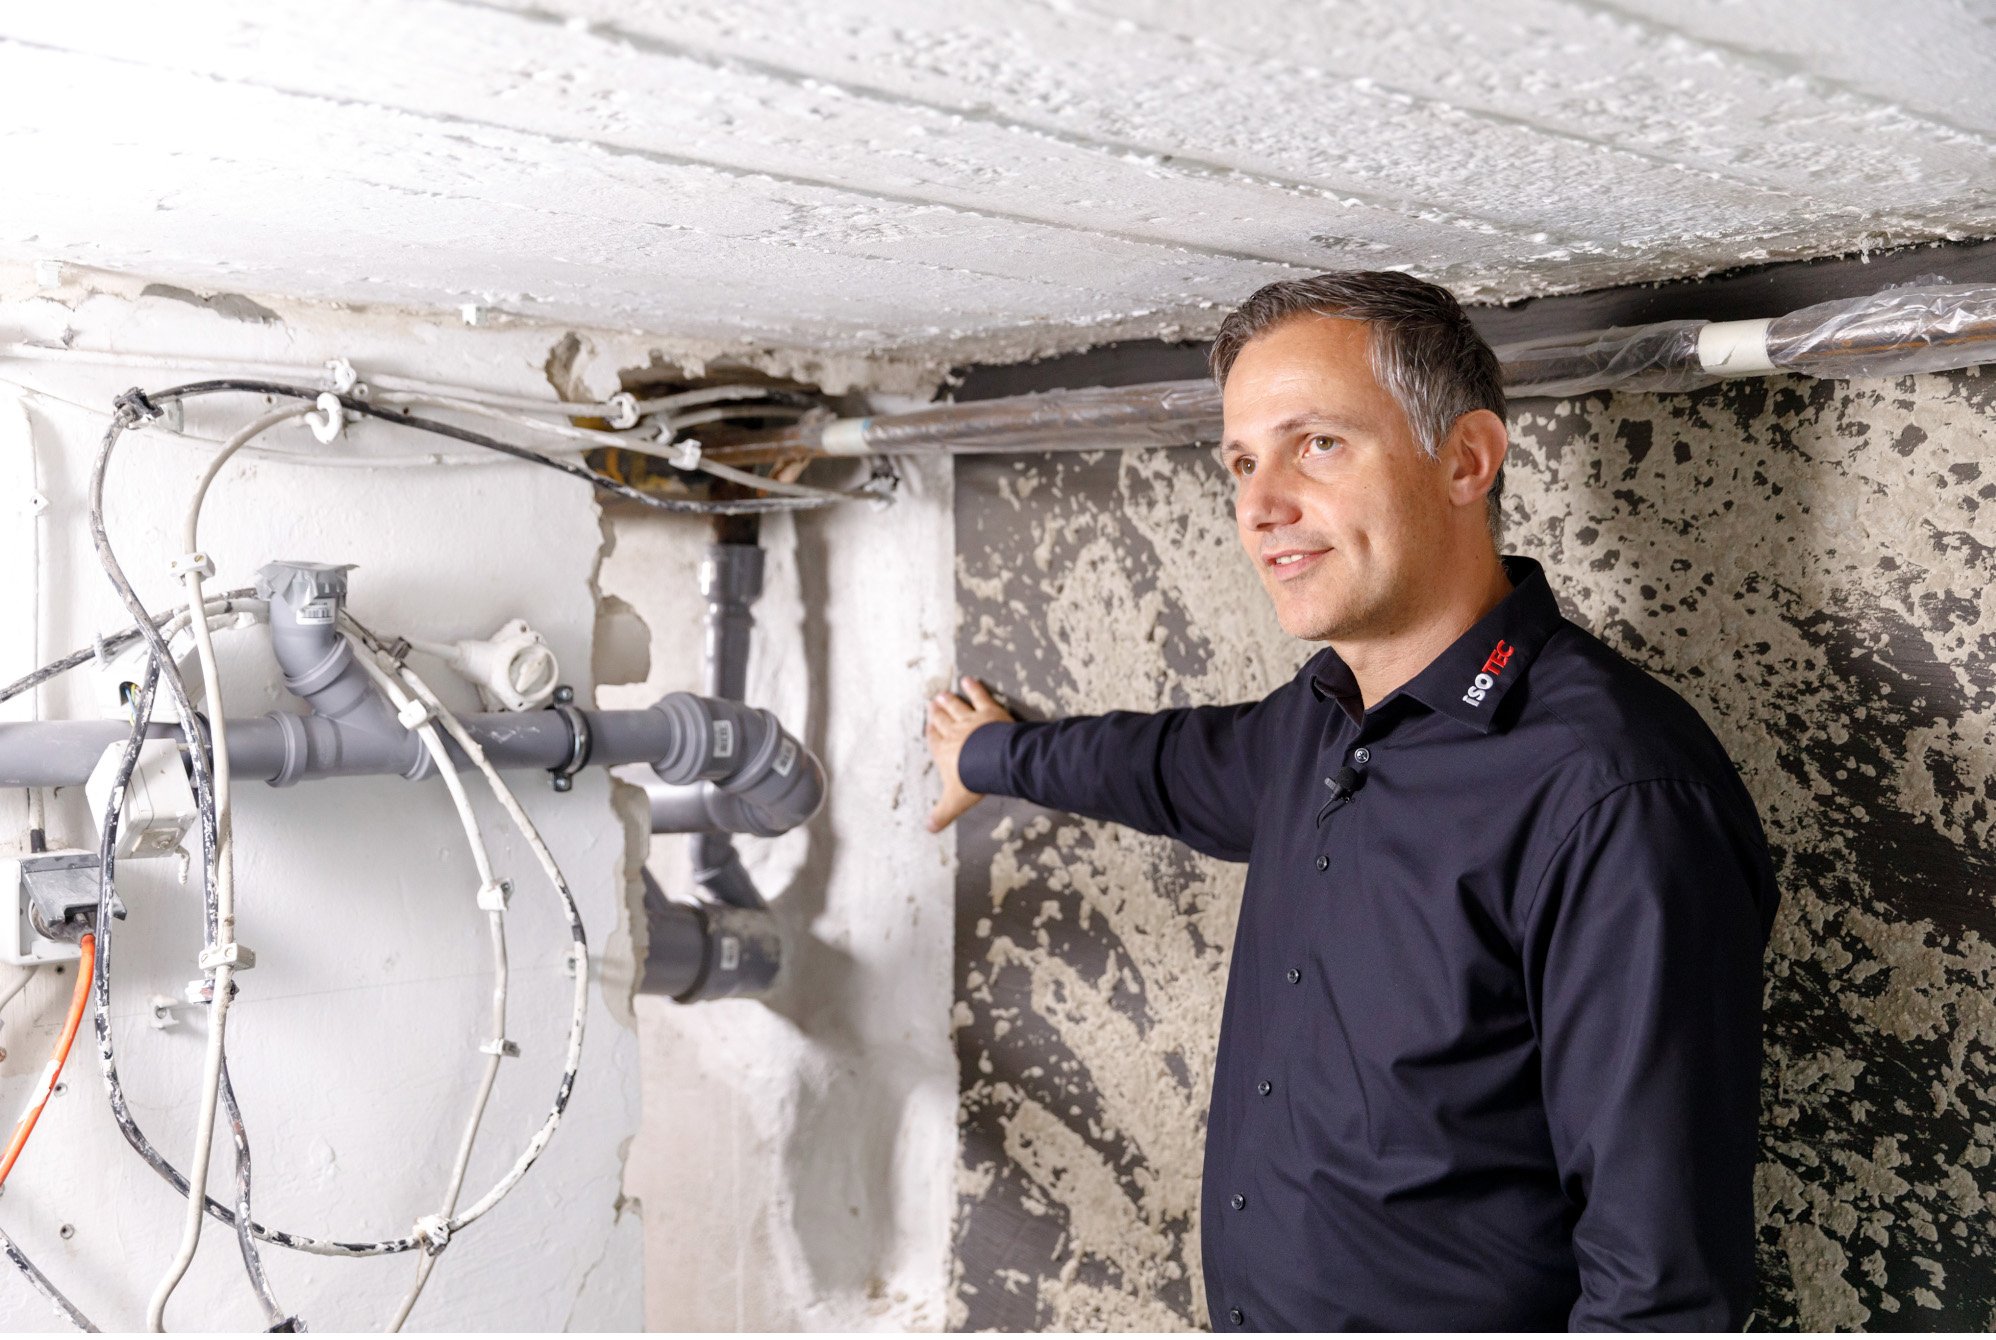 Nach fachmännischer Schadensanalyse ist die Lösung die ISOTEC-Innenabdichtung für den feuchten Keller.